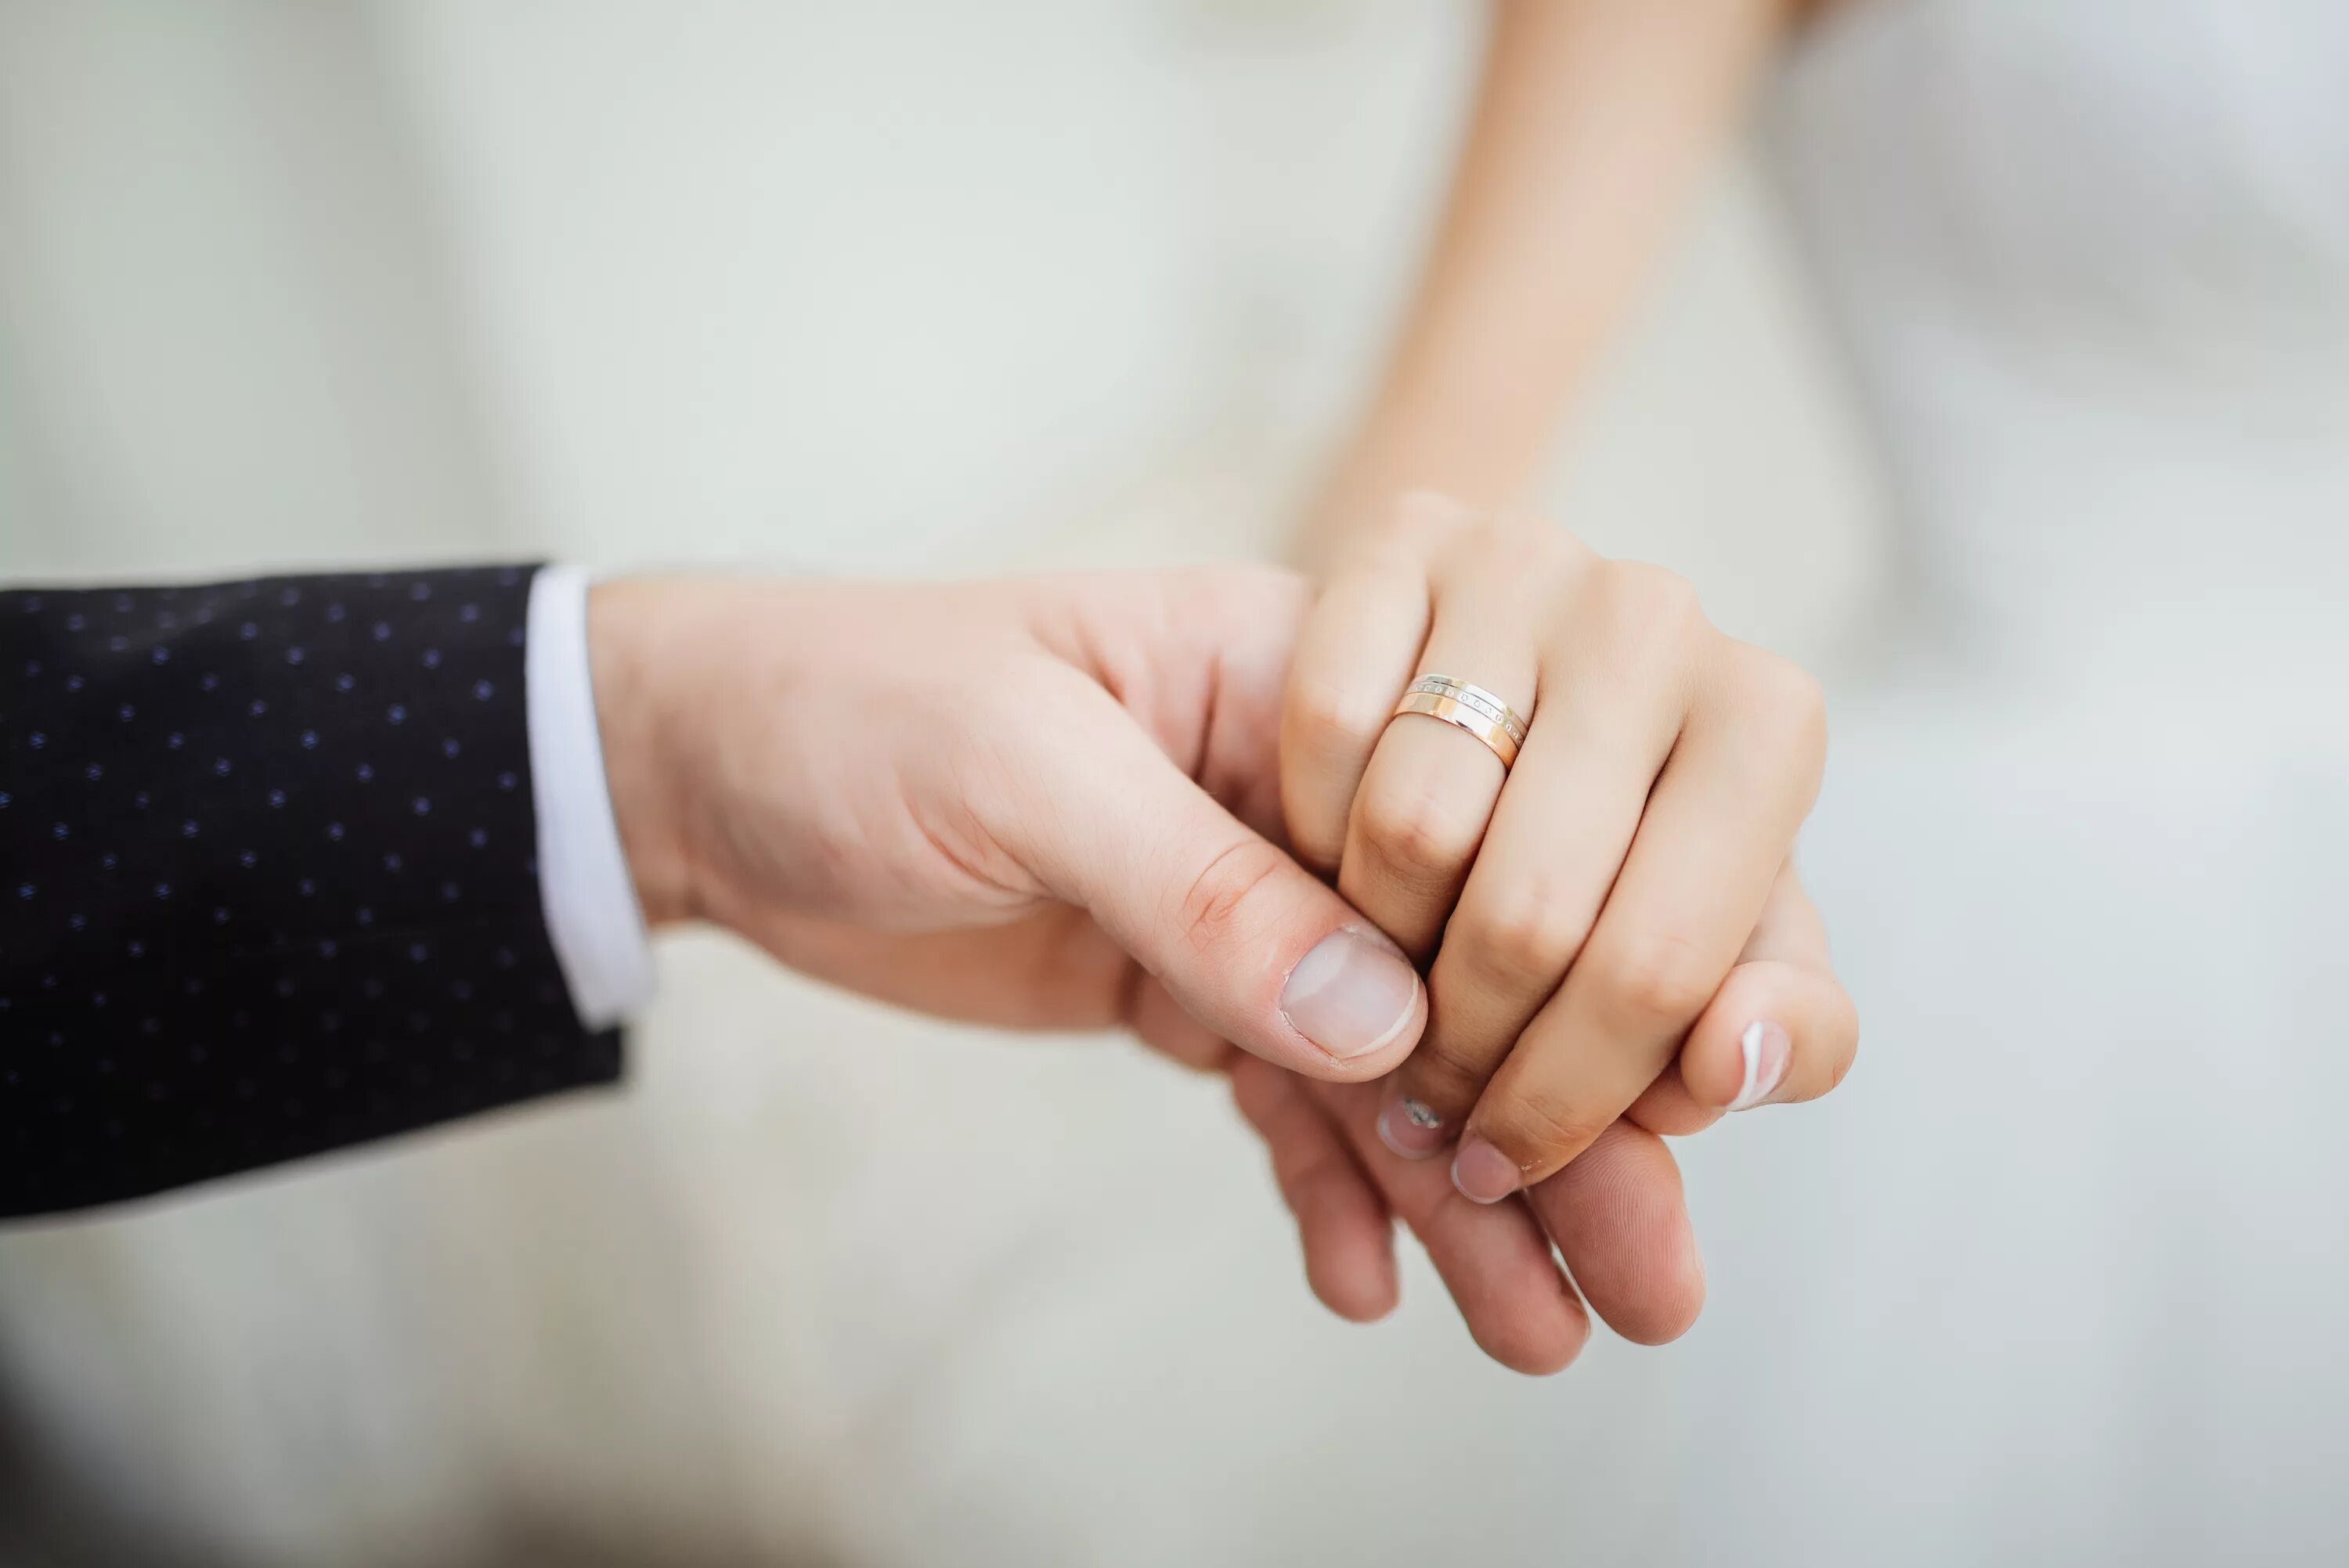 Кольцо замужества. Свадьба руки с кольцами. Обручальные кольца на руках. Вступающим в брак. Вступление в брак руки кольца.